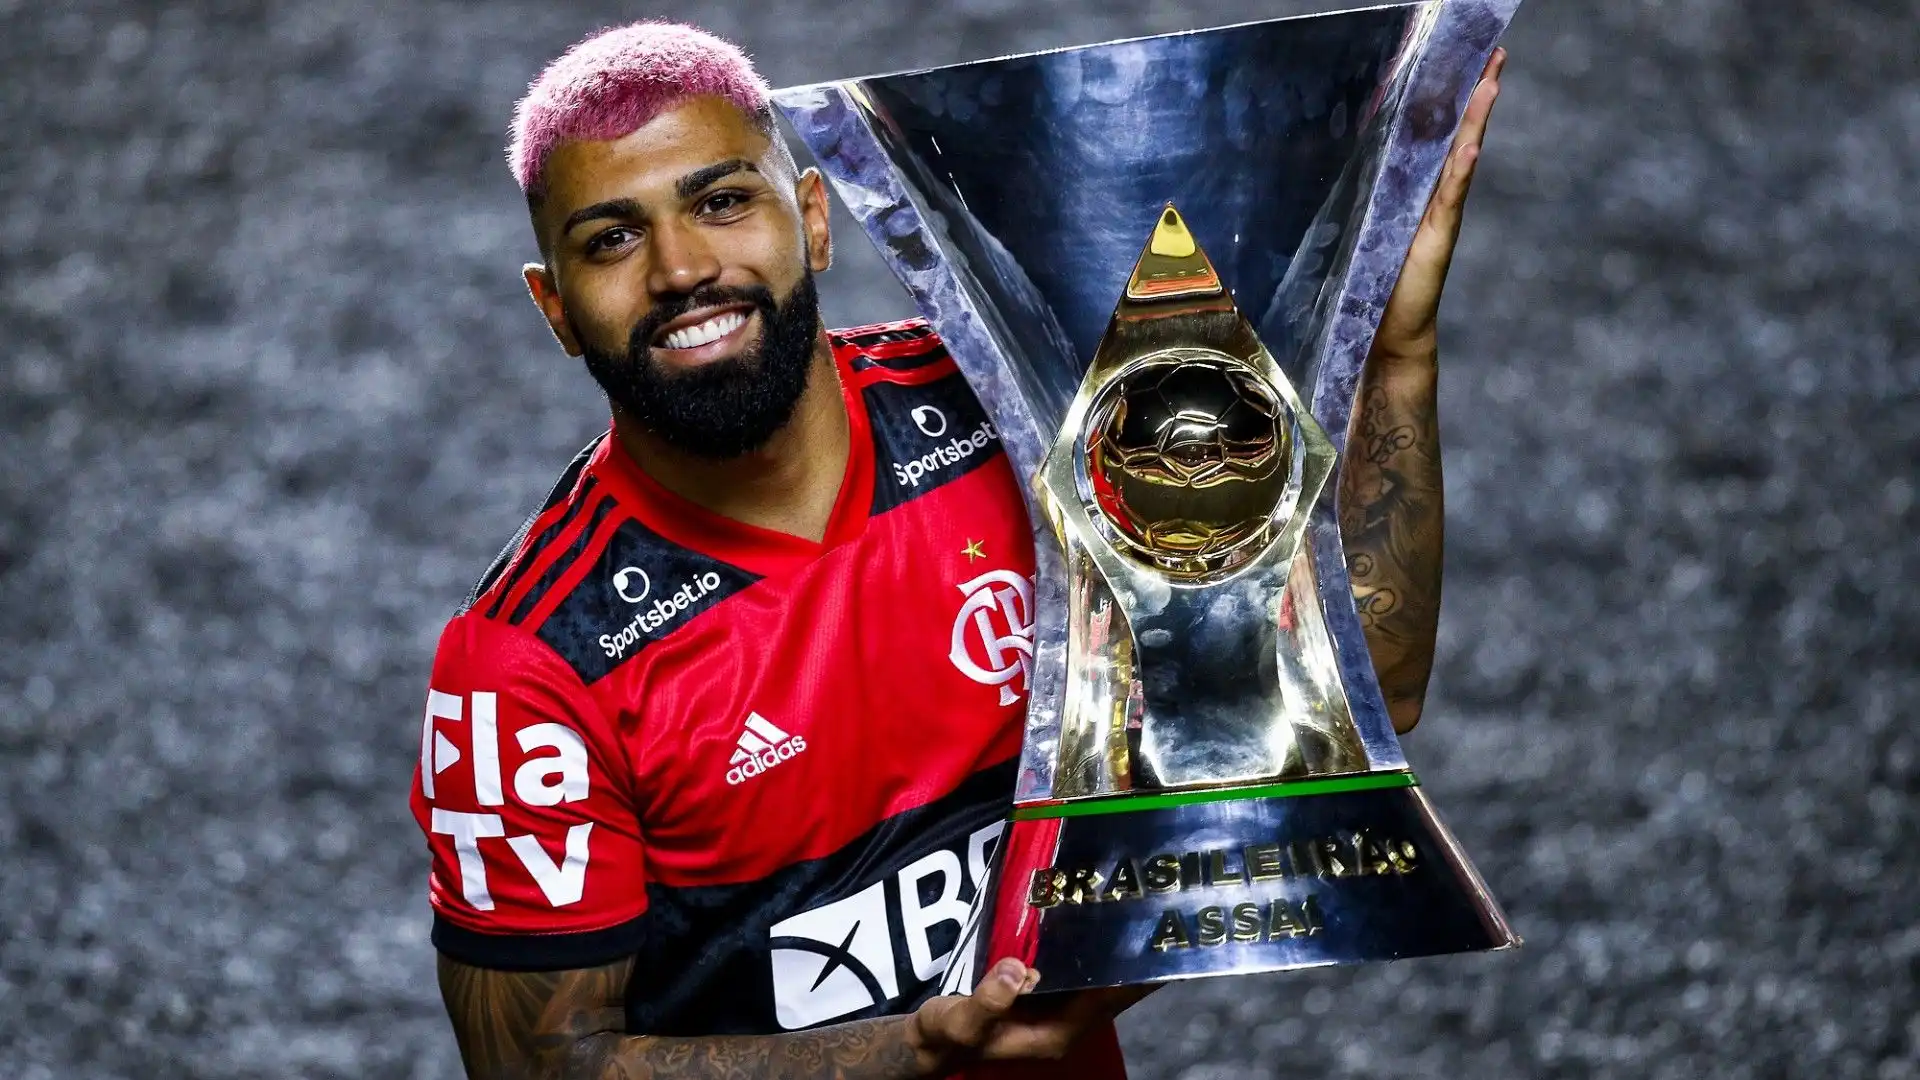 Nel 2020 il Flamengo lo acquistò a titolo definitivo e la carriera del brasiliano svoltò definitivamente